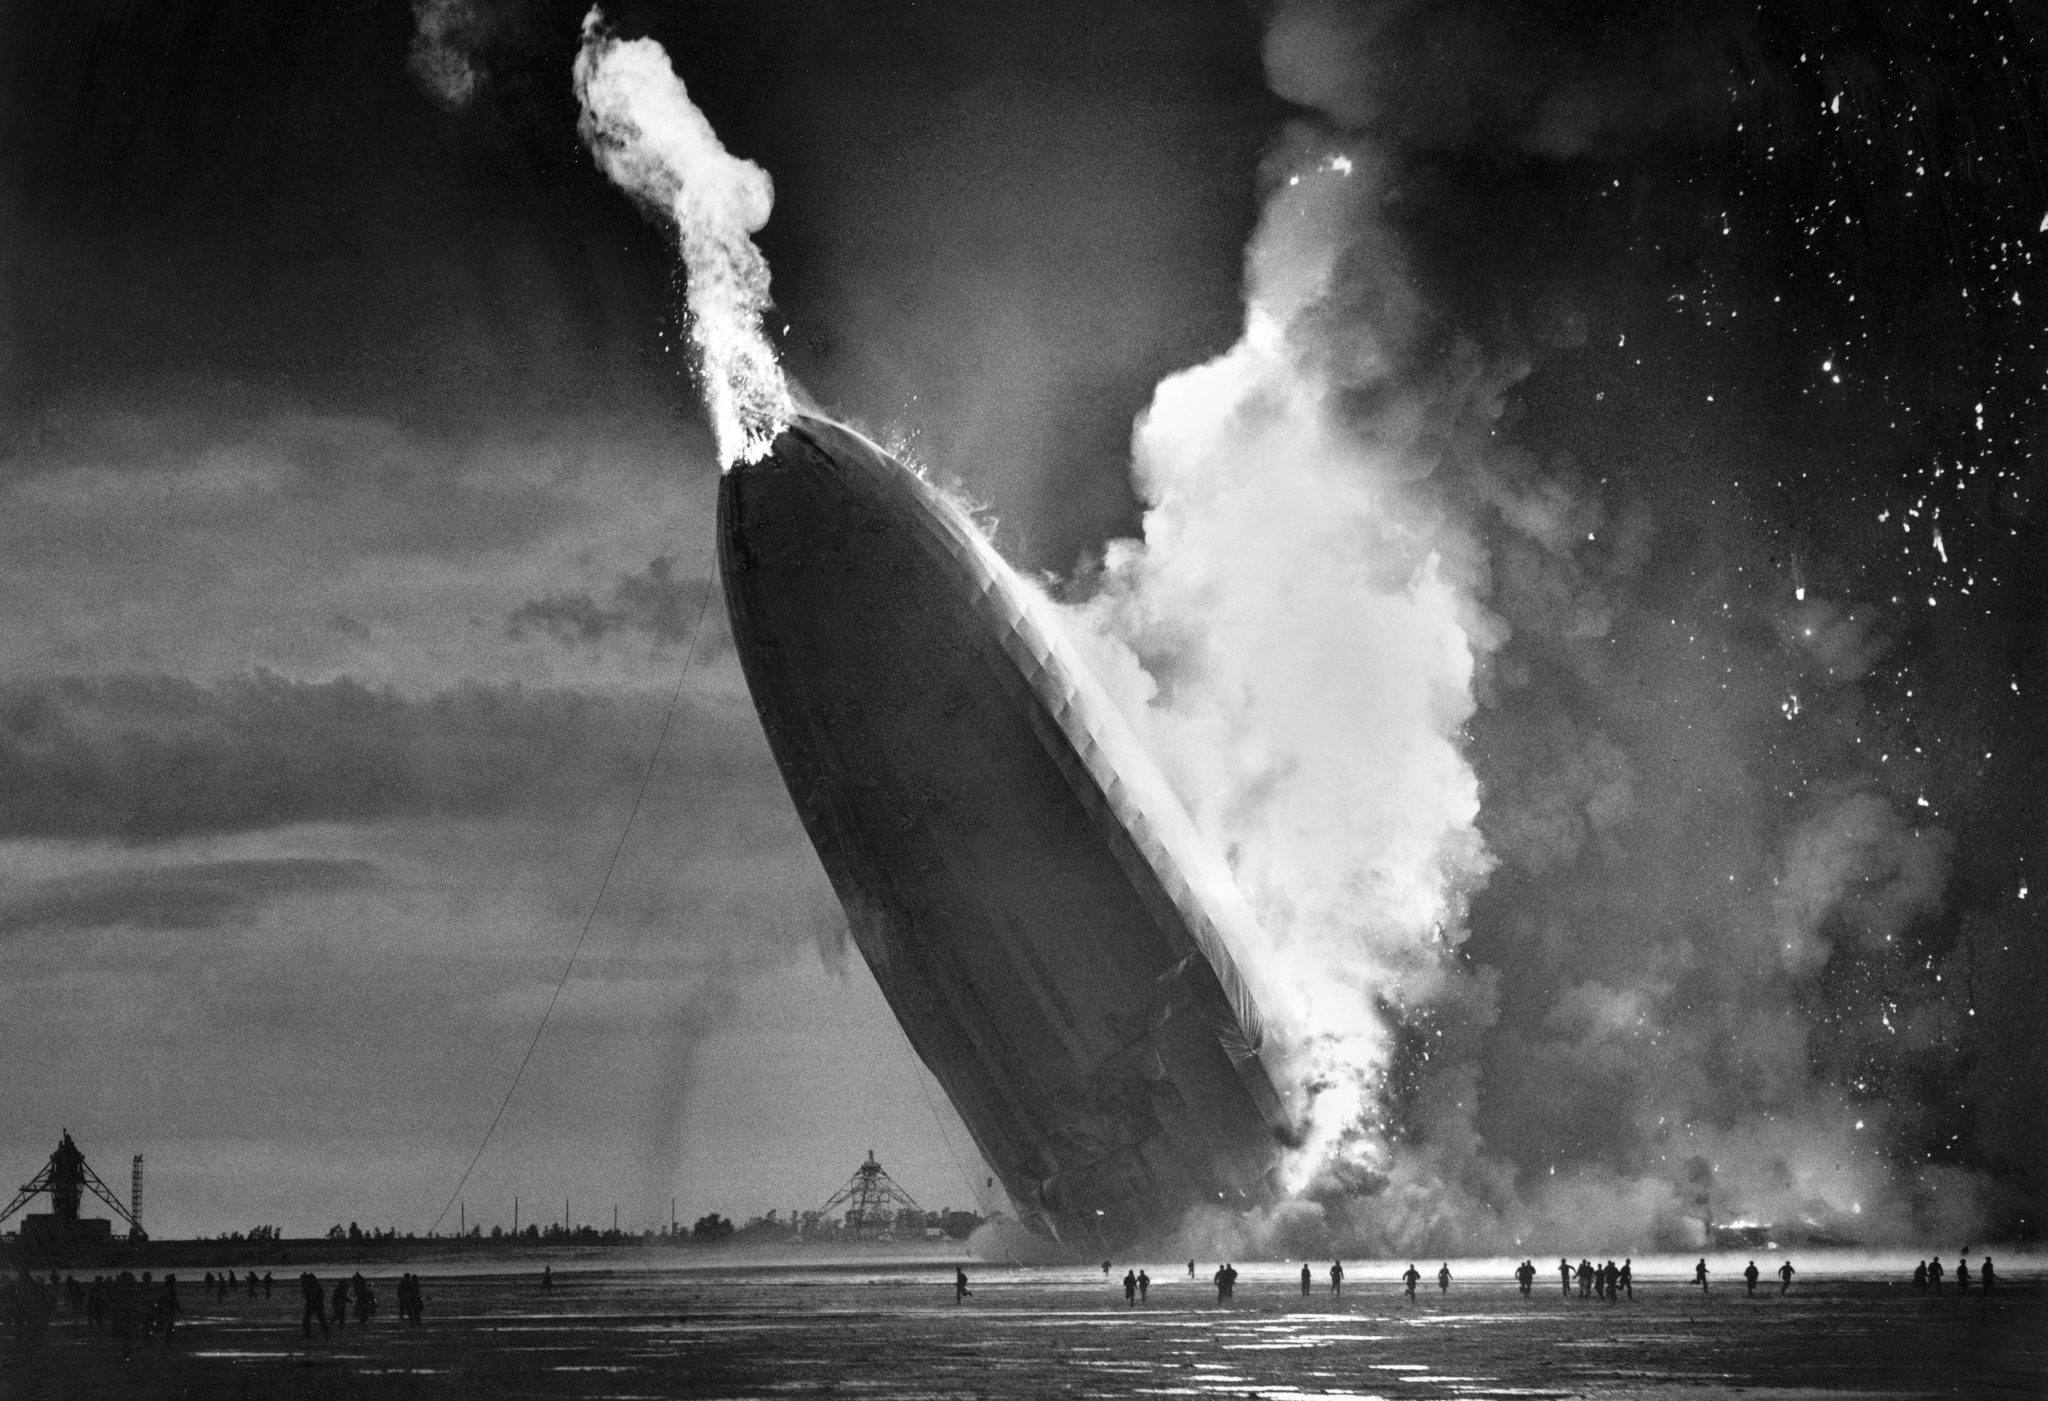 Der brennende Zeppelin stürzt fast senkrecht auf die Erde